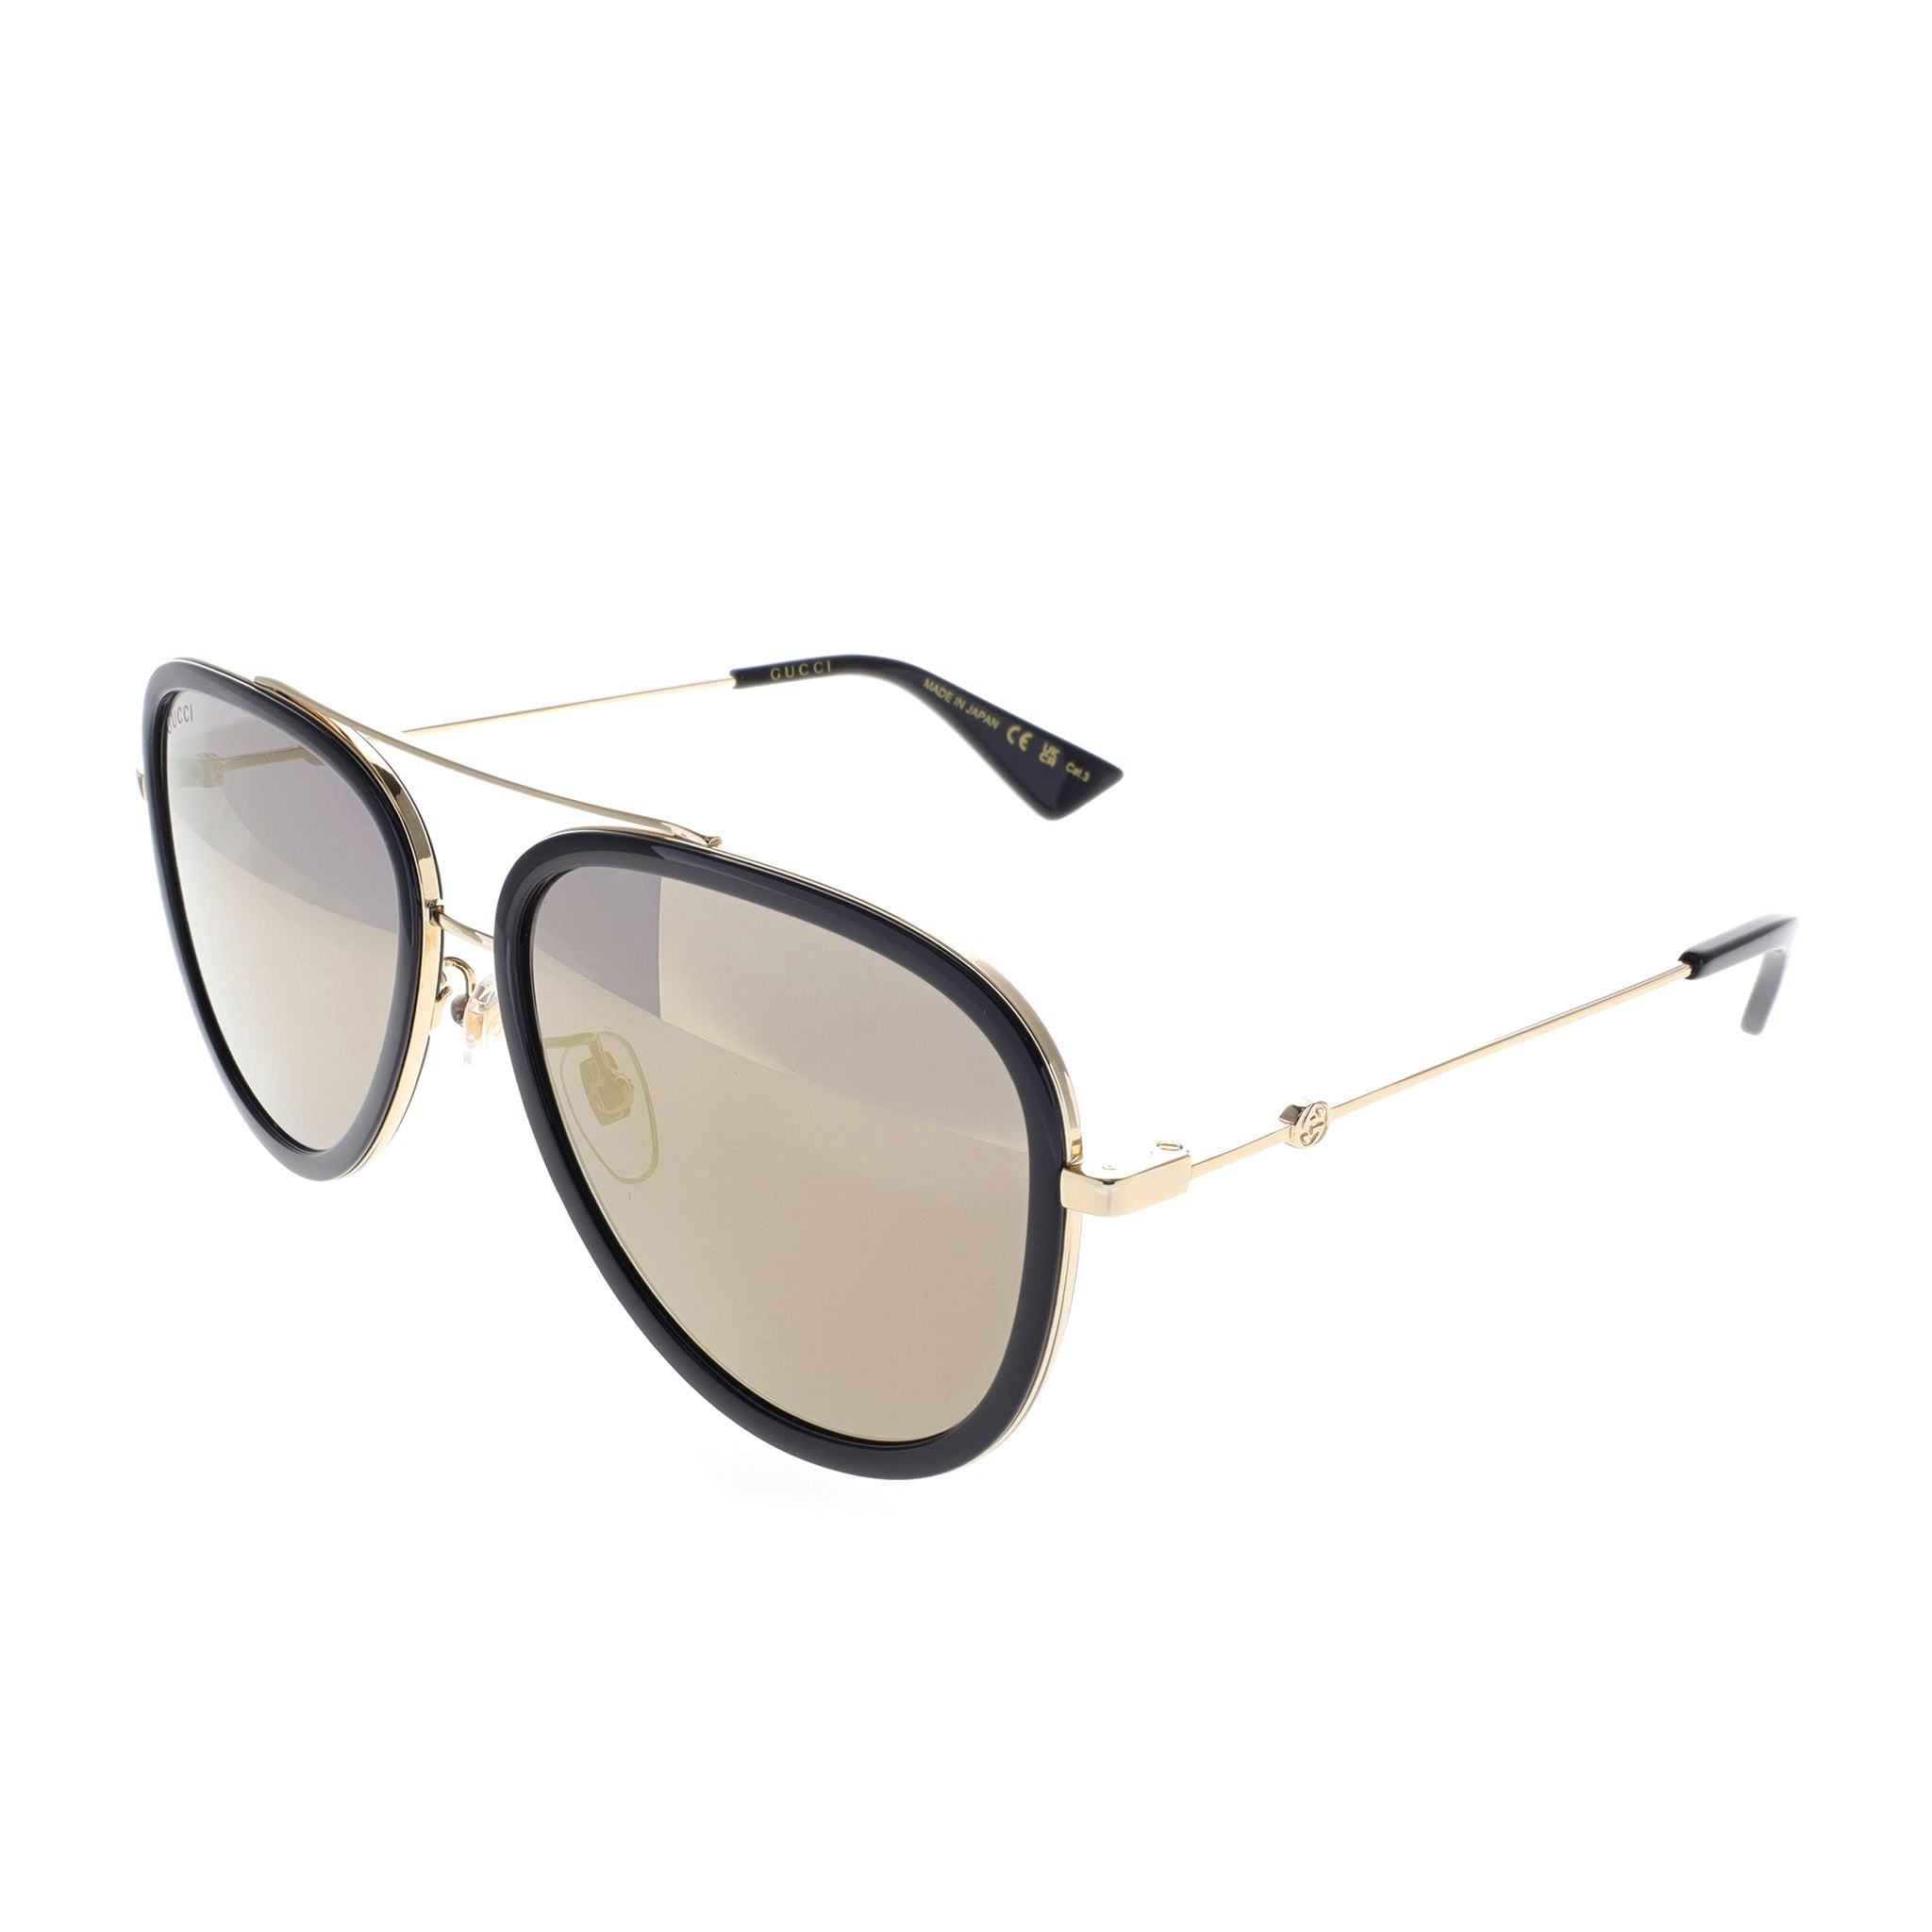 Gucci Sunglasses - Aviator - GG0062S-001